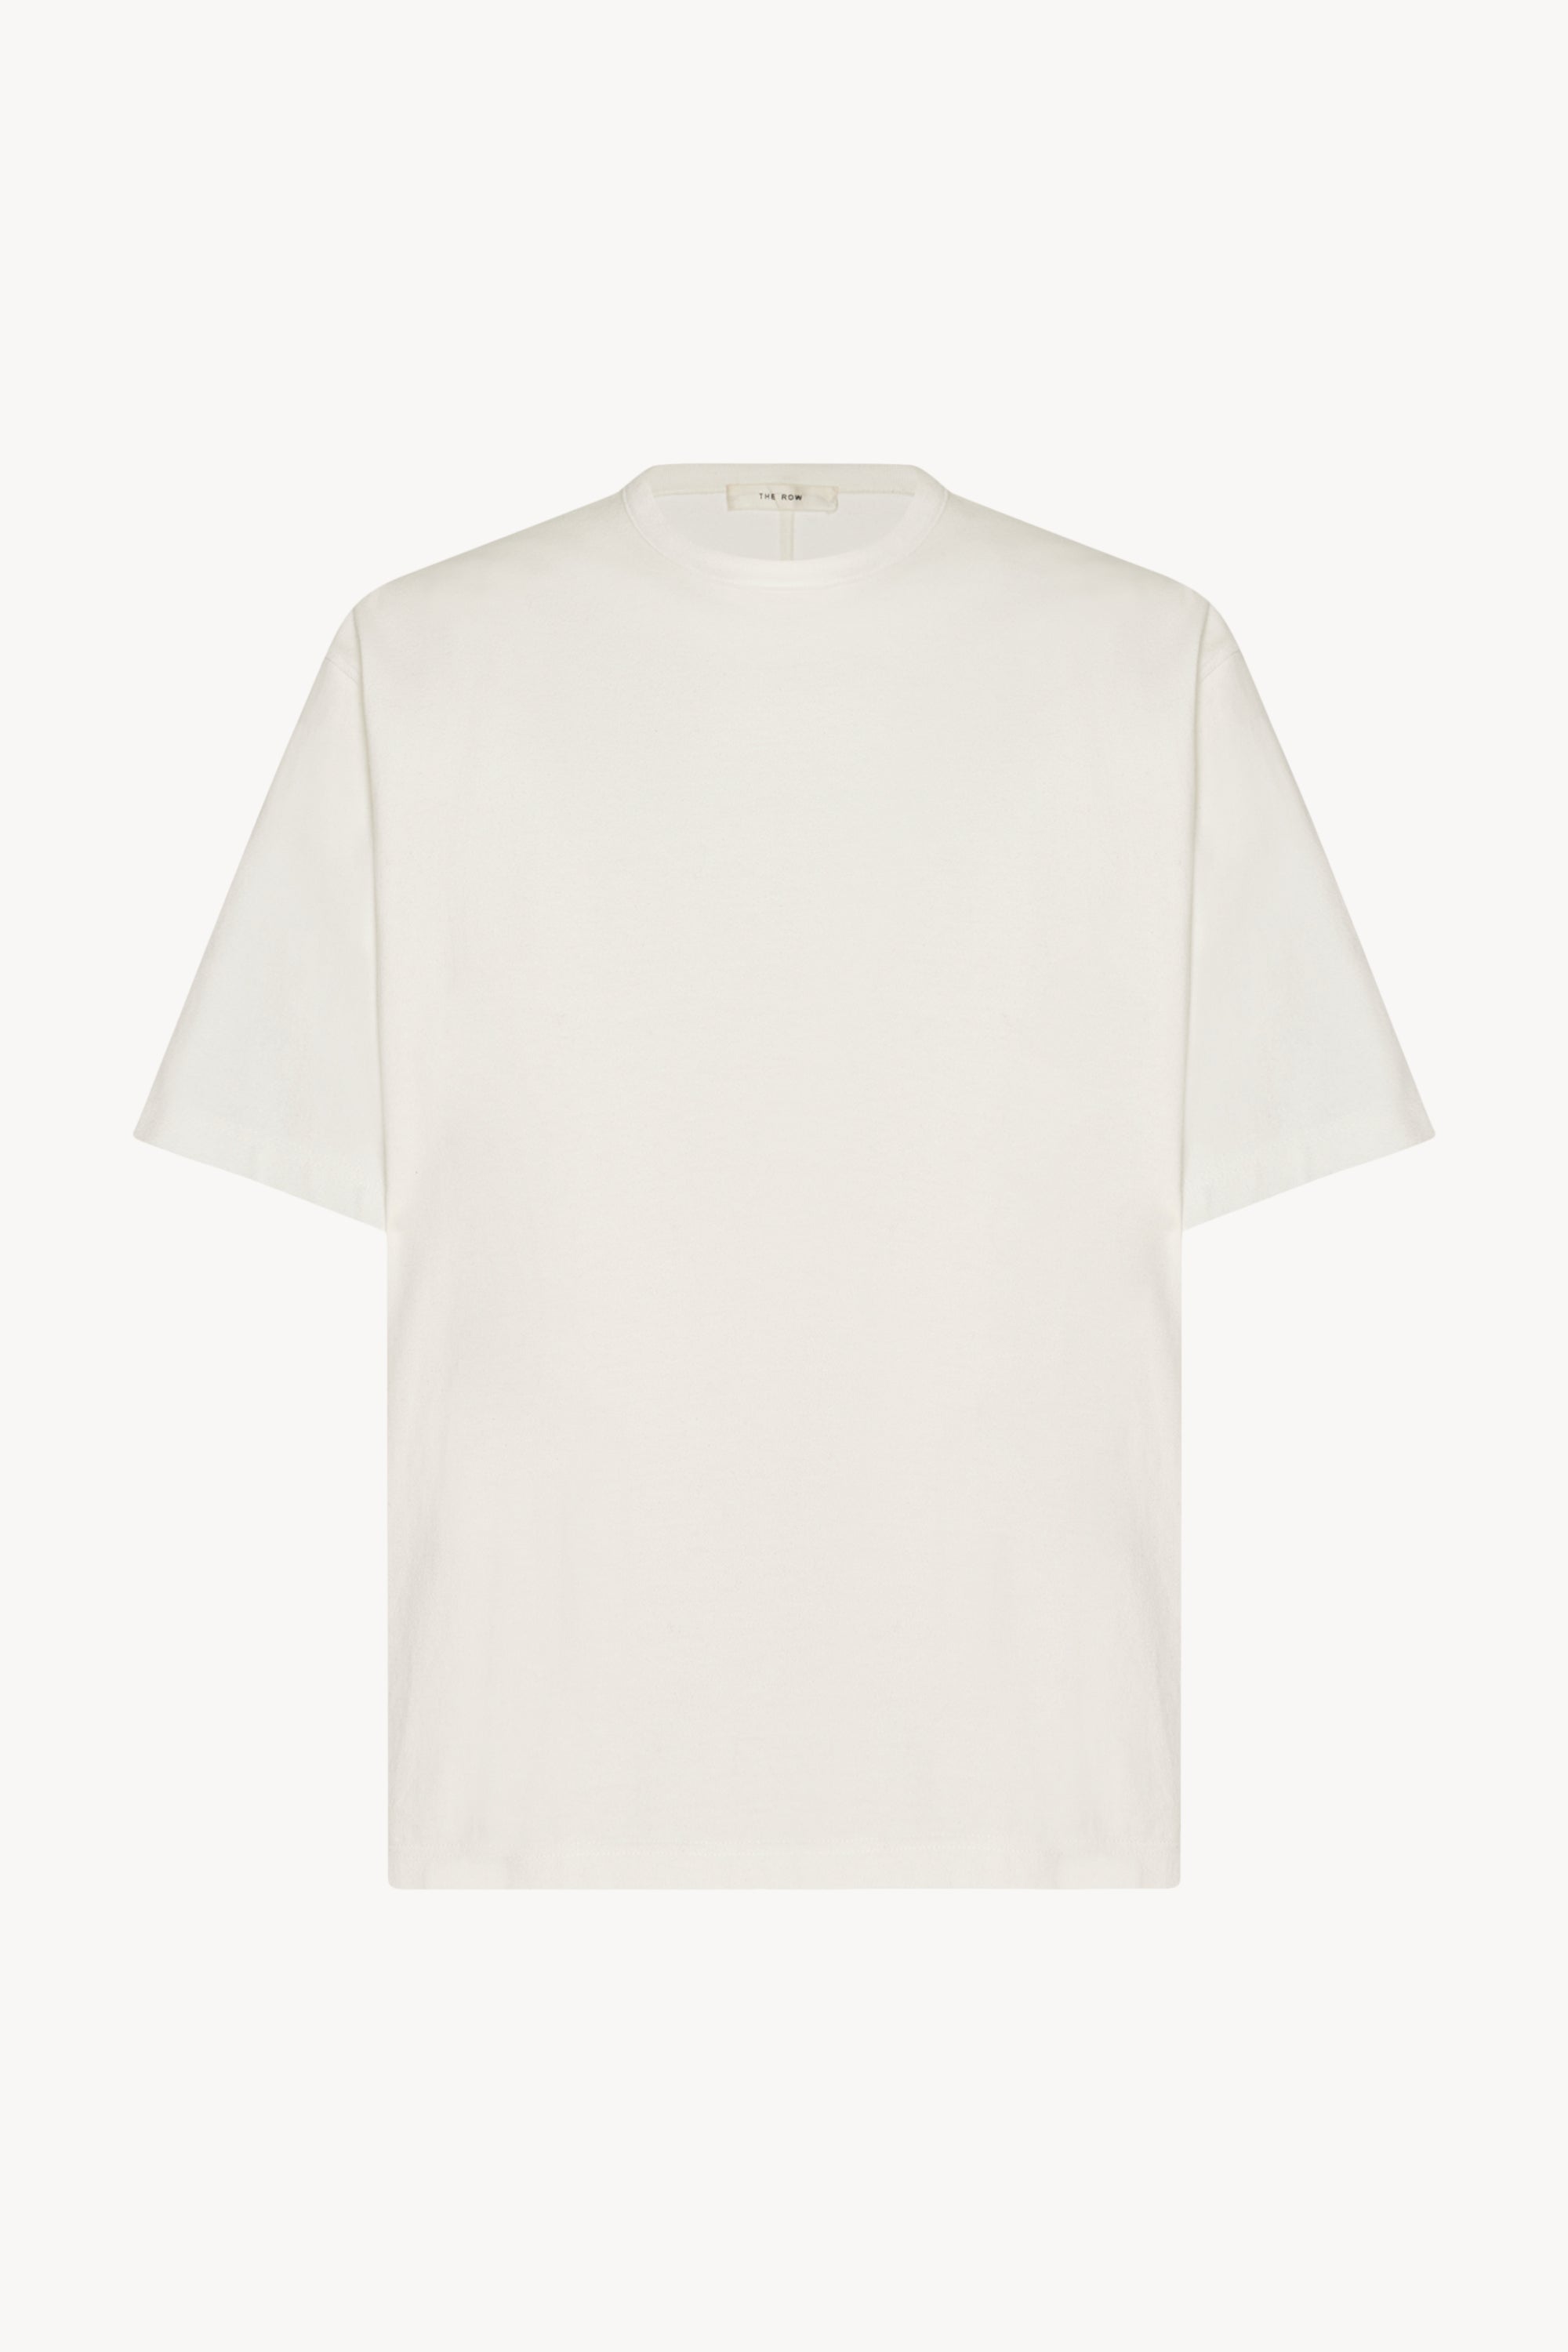 Louis Vuitton Signature Short-sleeved T-Shirt